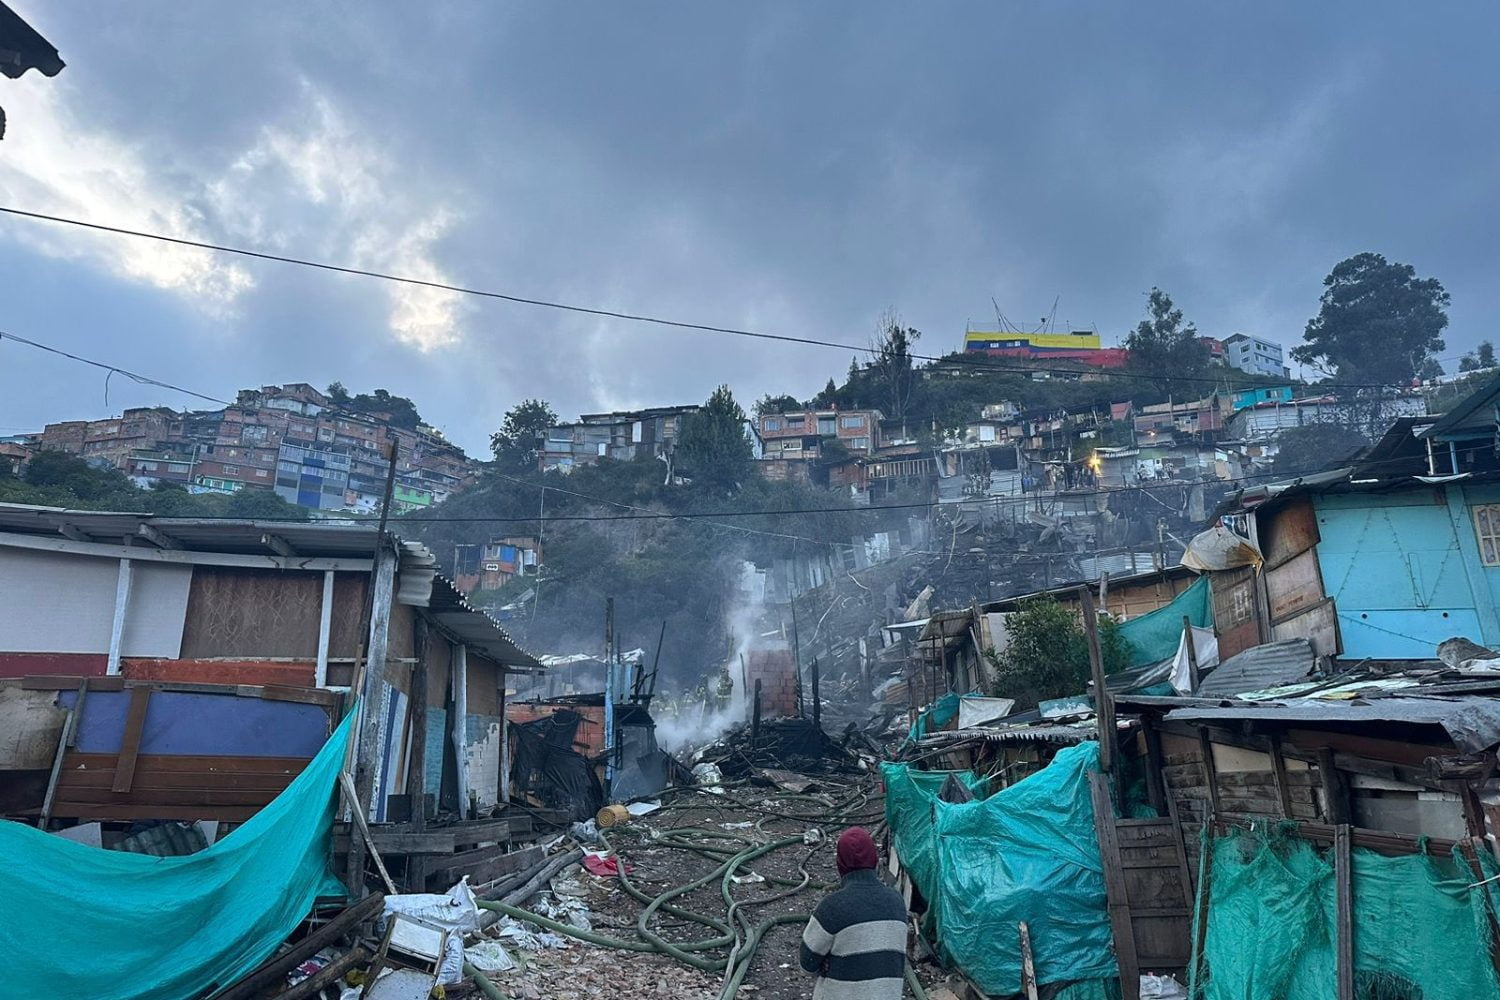 Barrio destruido en Bogotá por incendio: ¿Qué pasará con las víctimas que perdieron todo?